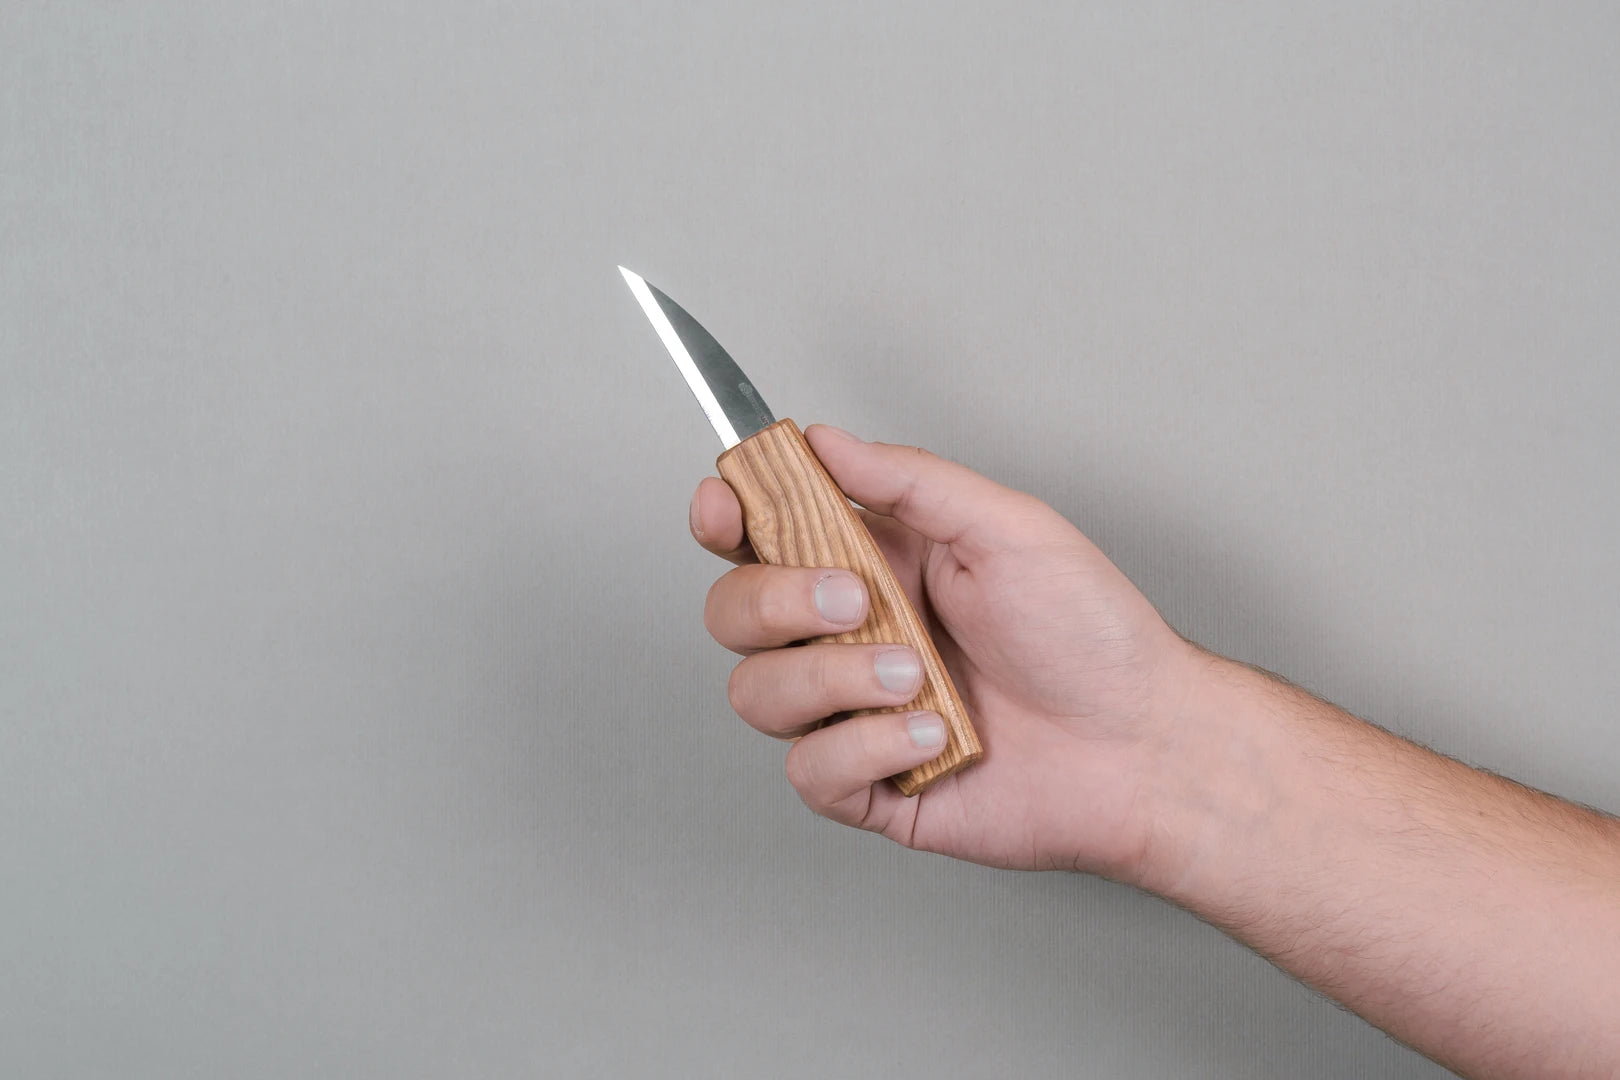 Buy quality blade for whittling knives online - BeaverCraft – BeaverCraft  Tools